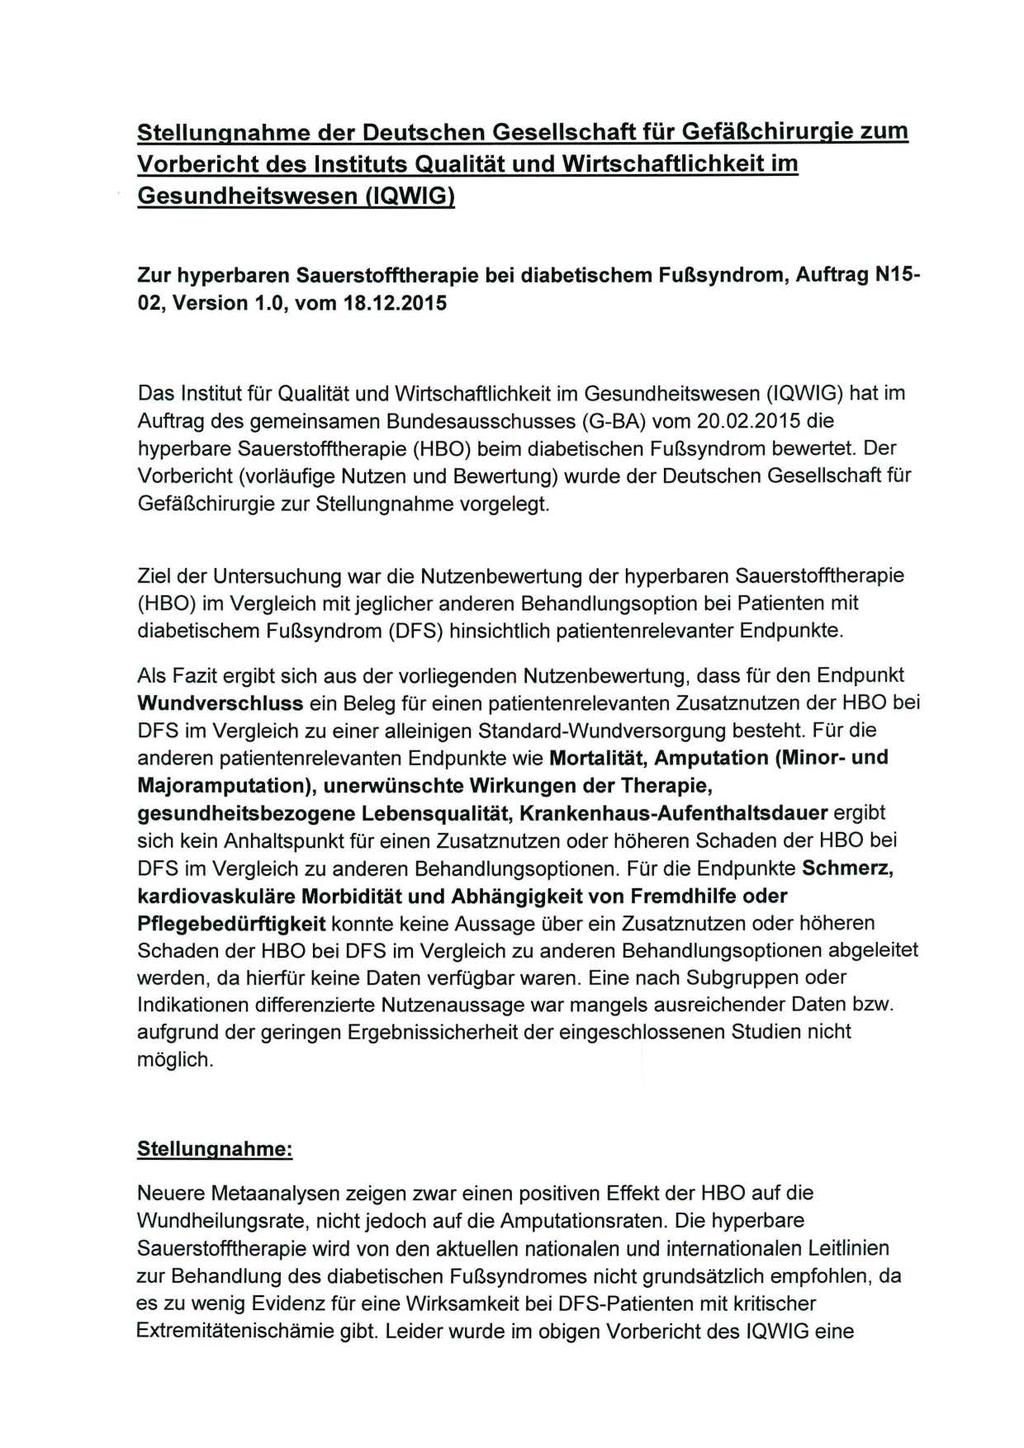 Stellungnahme der Deutschen Gesellschaft für Gefäßchirurgie zum Vorbericht des Instituts Qualität und Wirtschaftlichkeit im Gesundheitswesen (IQWIG) Zur hyperbaren Sauerstofftherapie bei diabetischem